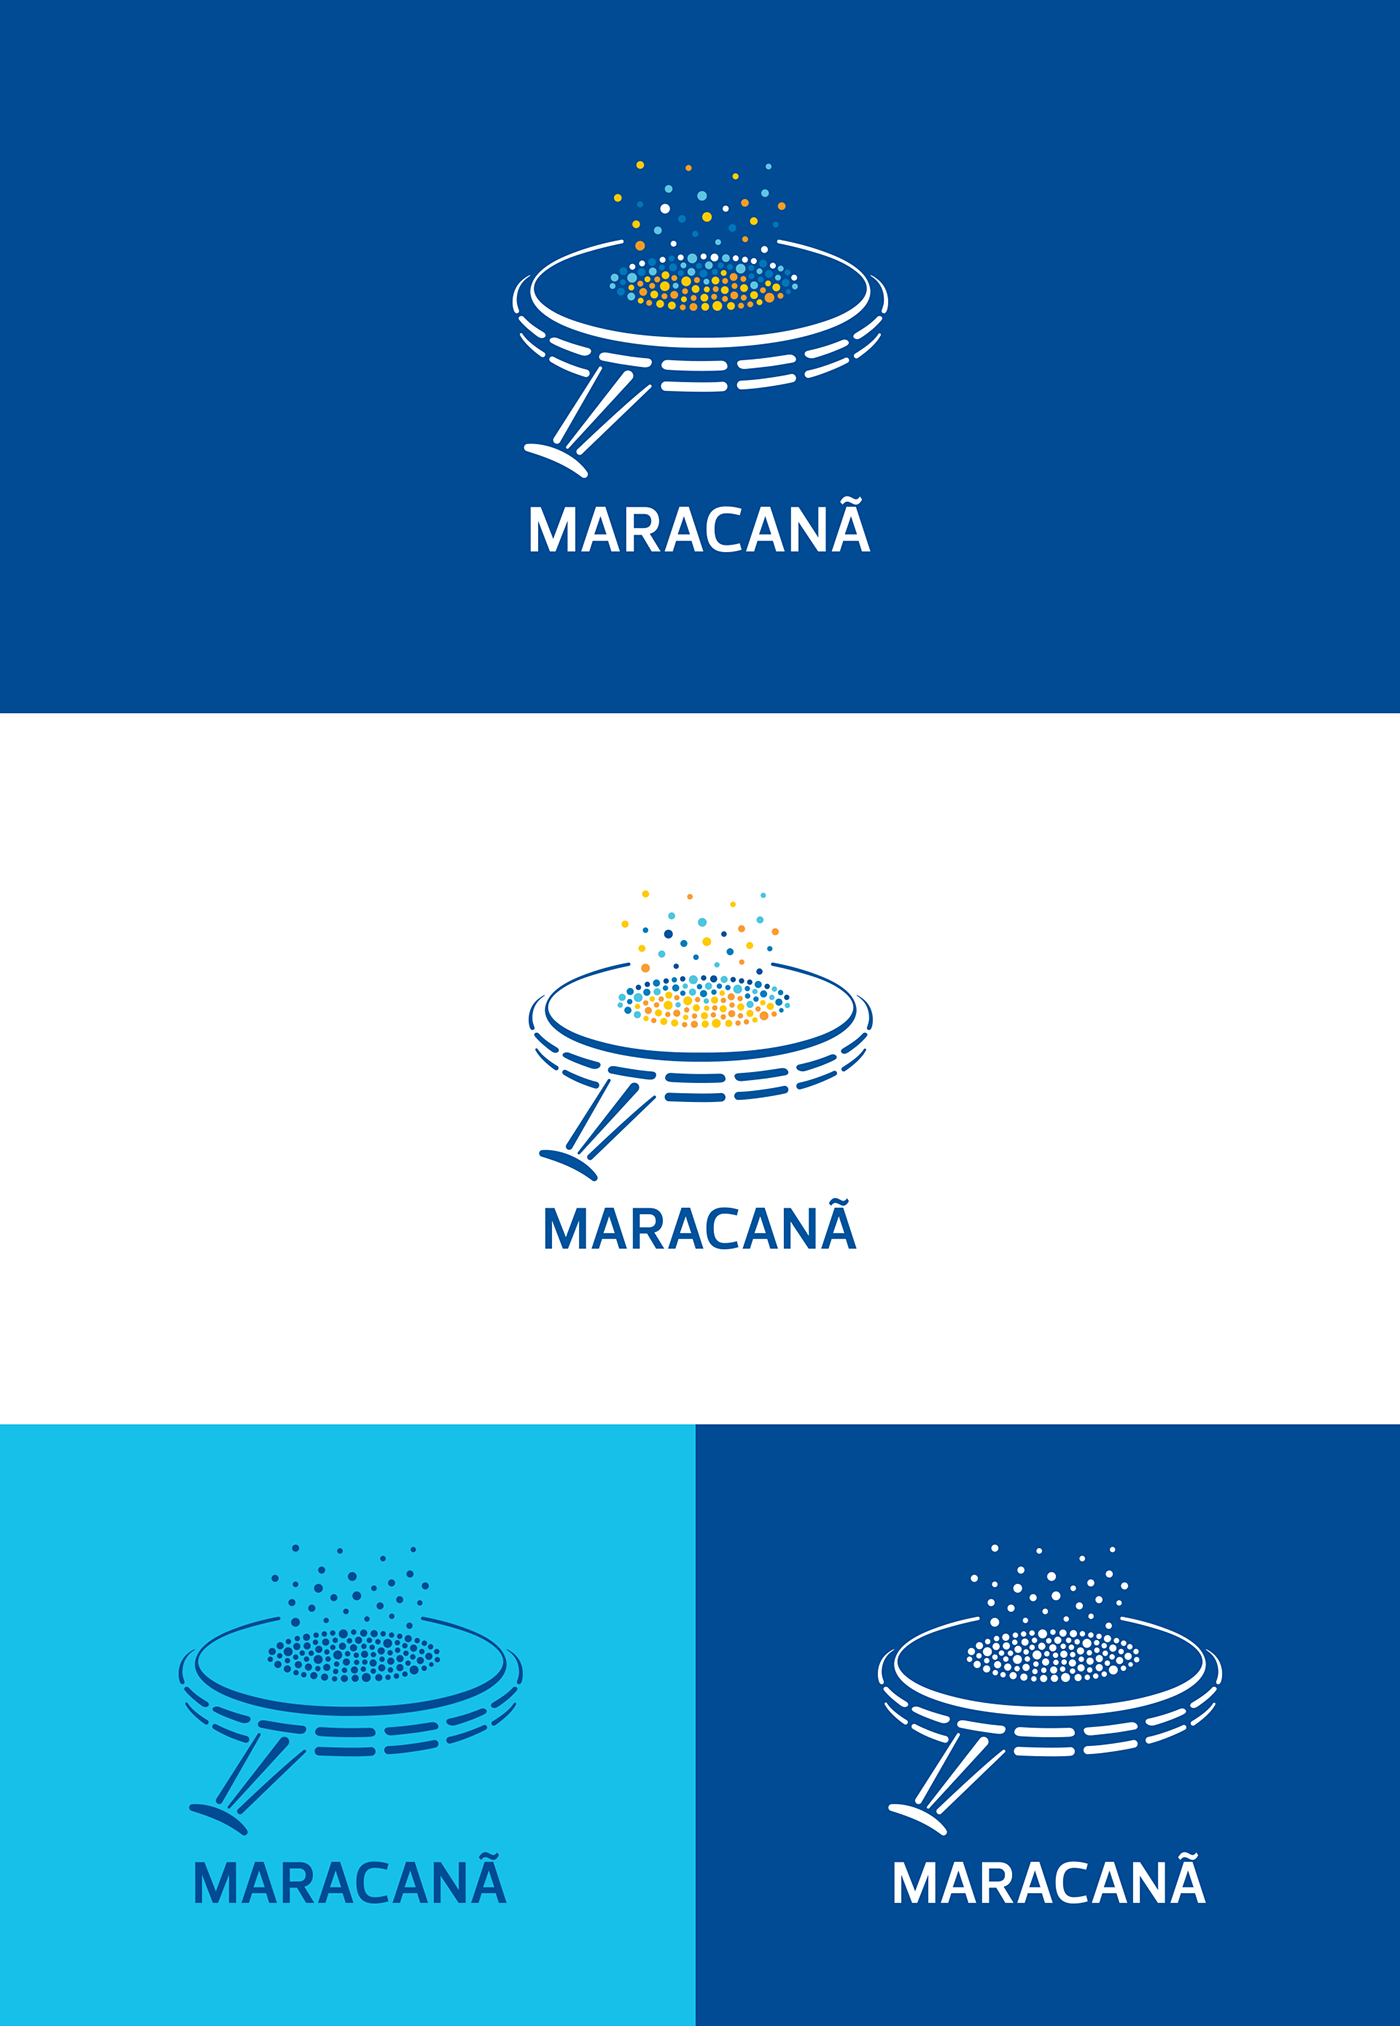 maracana branding  logo soccer futebol design rio carioca stadium